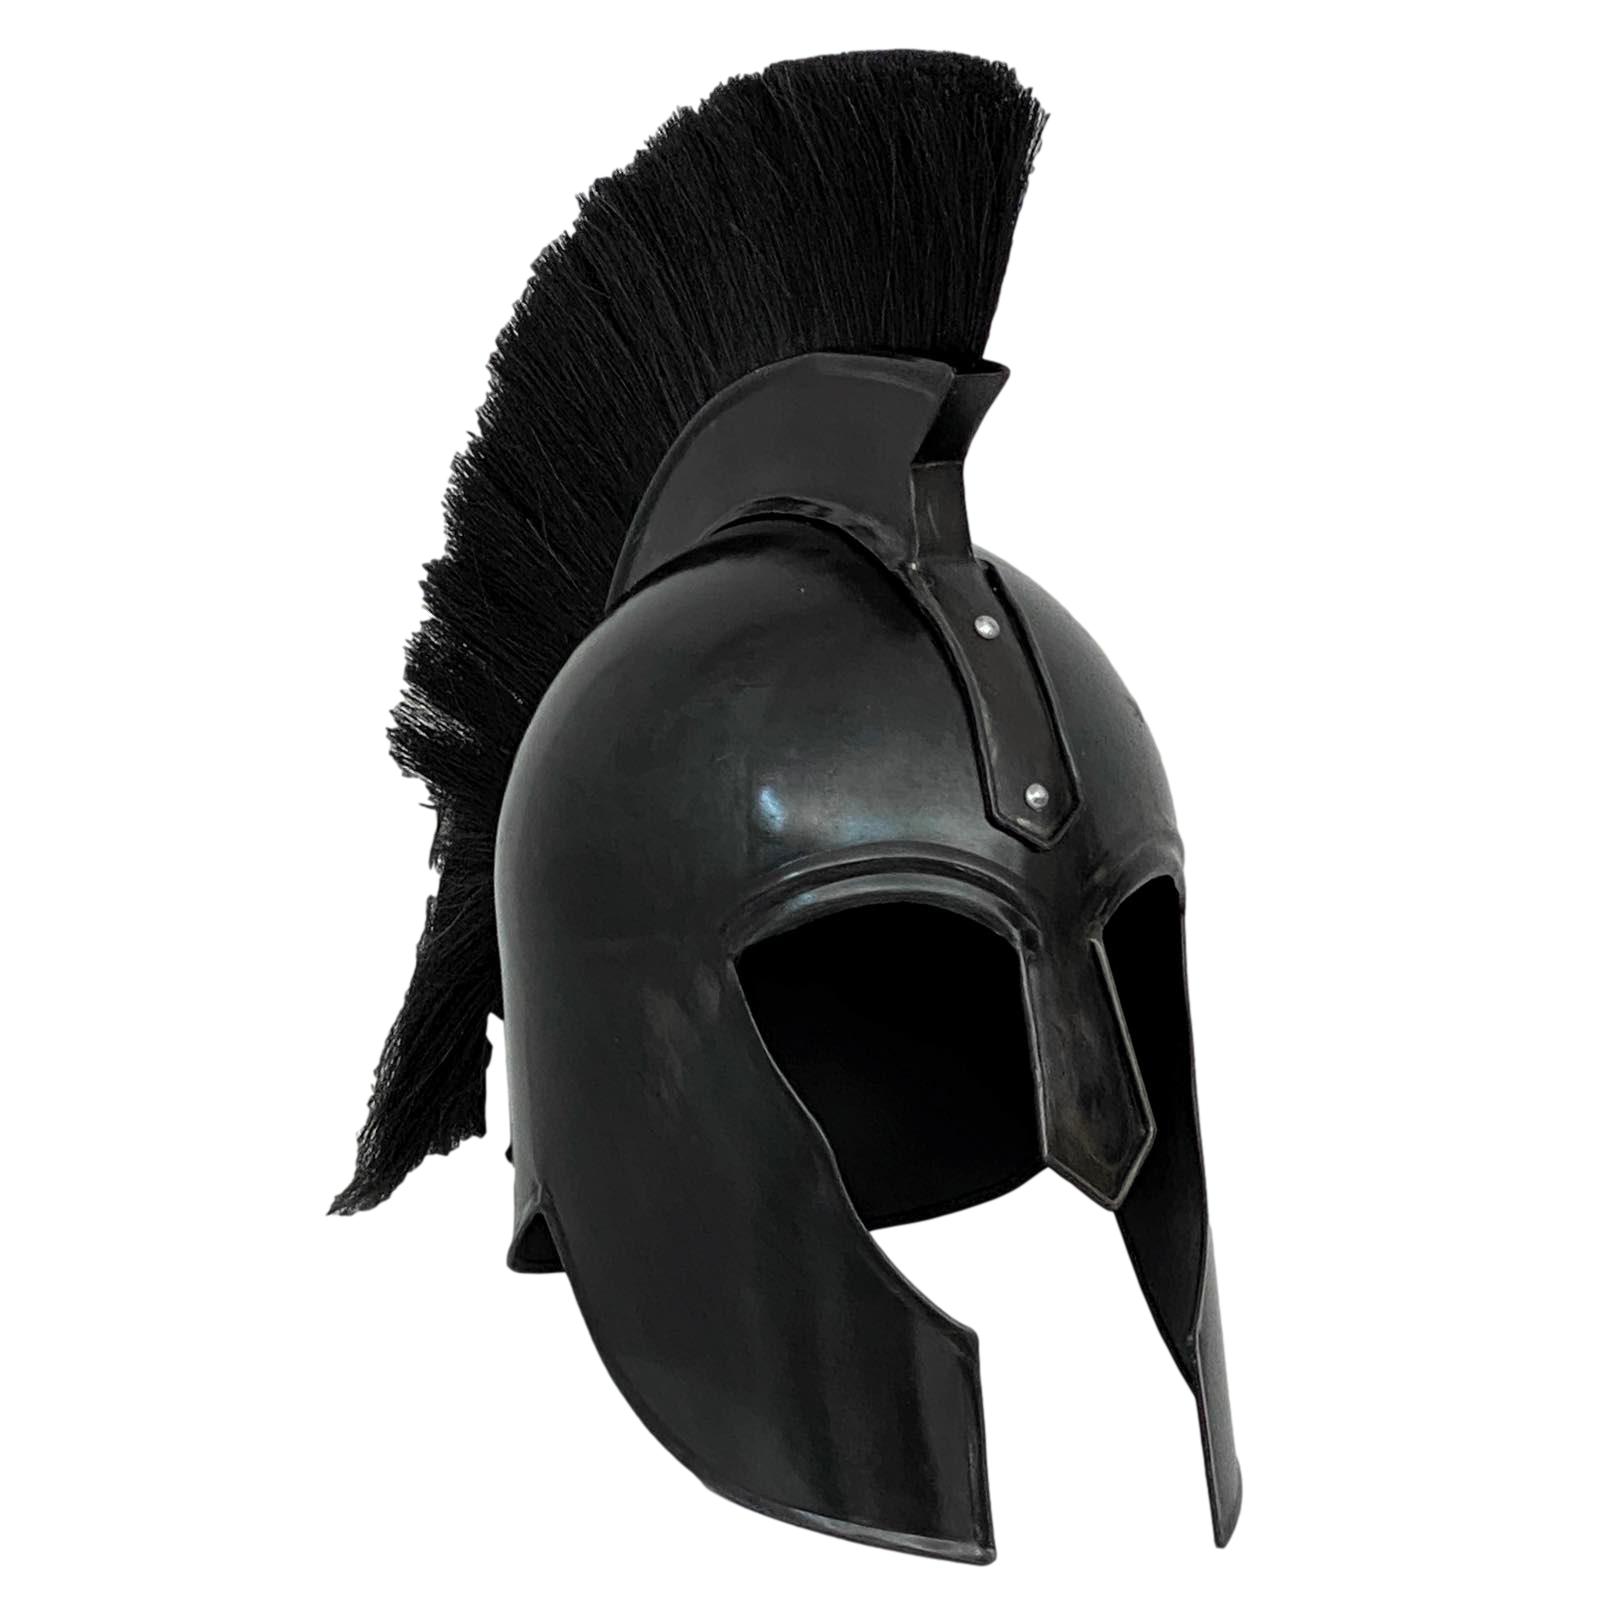 Spartaanse warrior armor helm decoratie metaal 43cm antieke stijl | Nederland